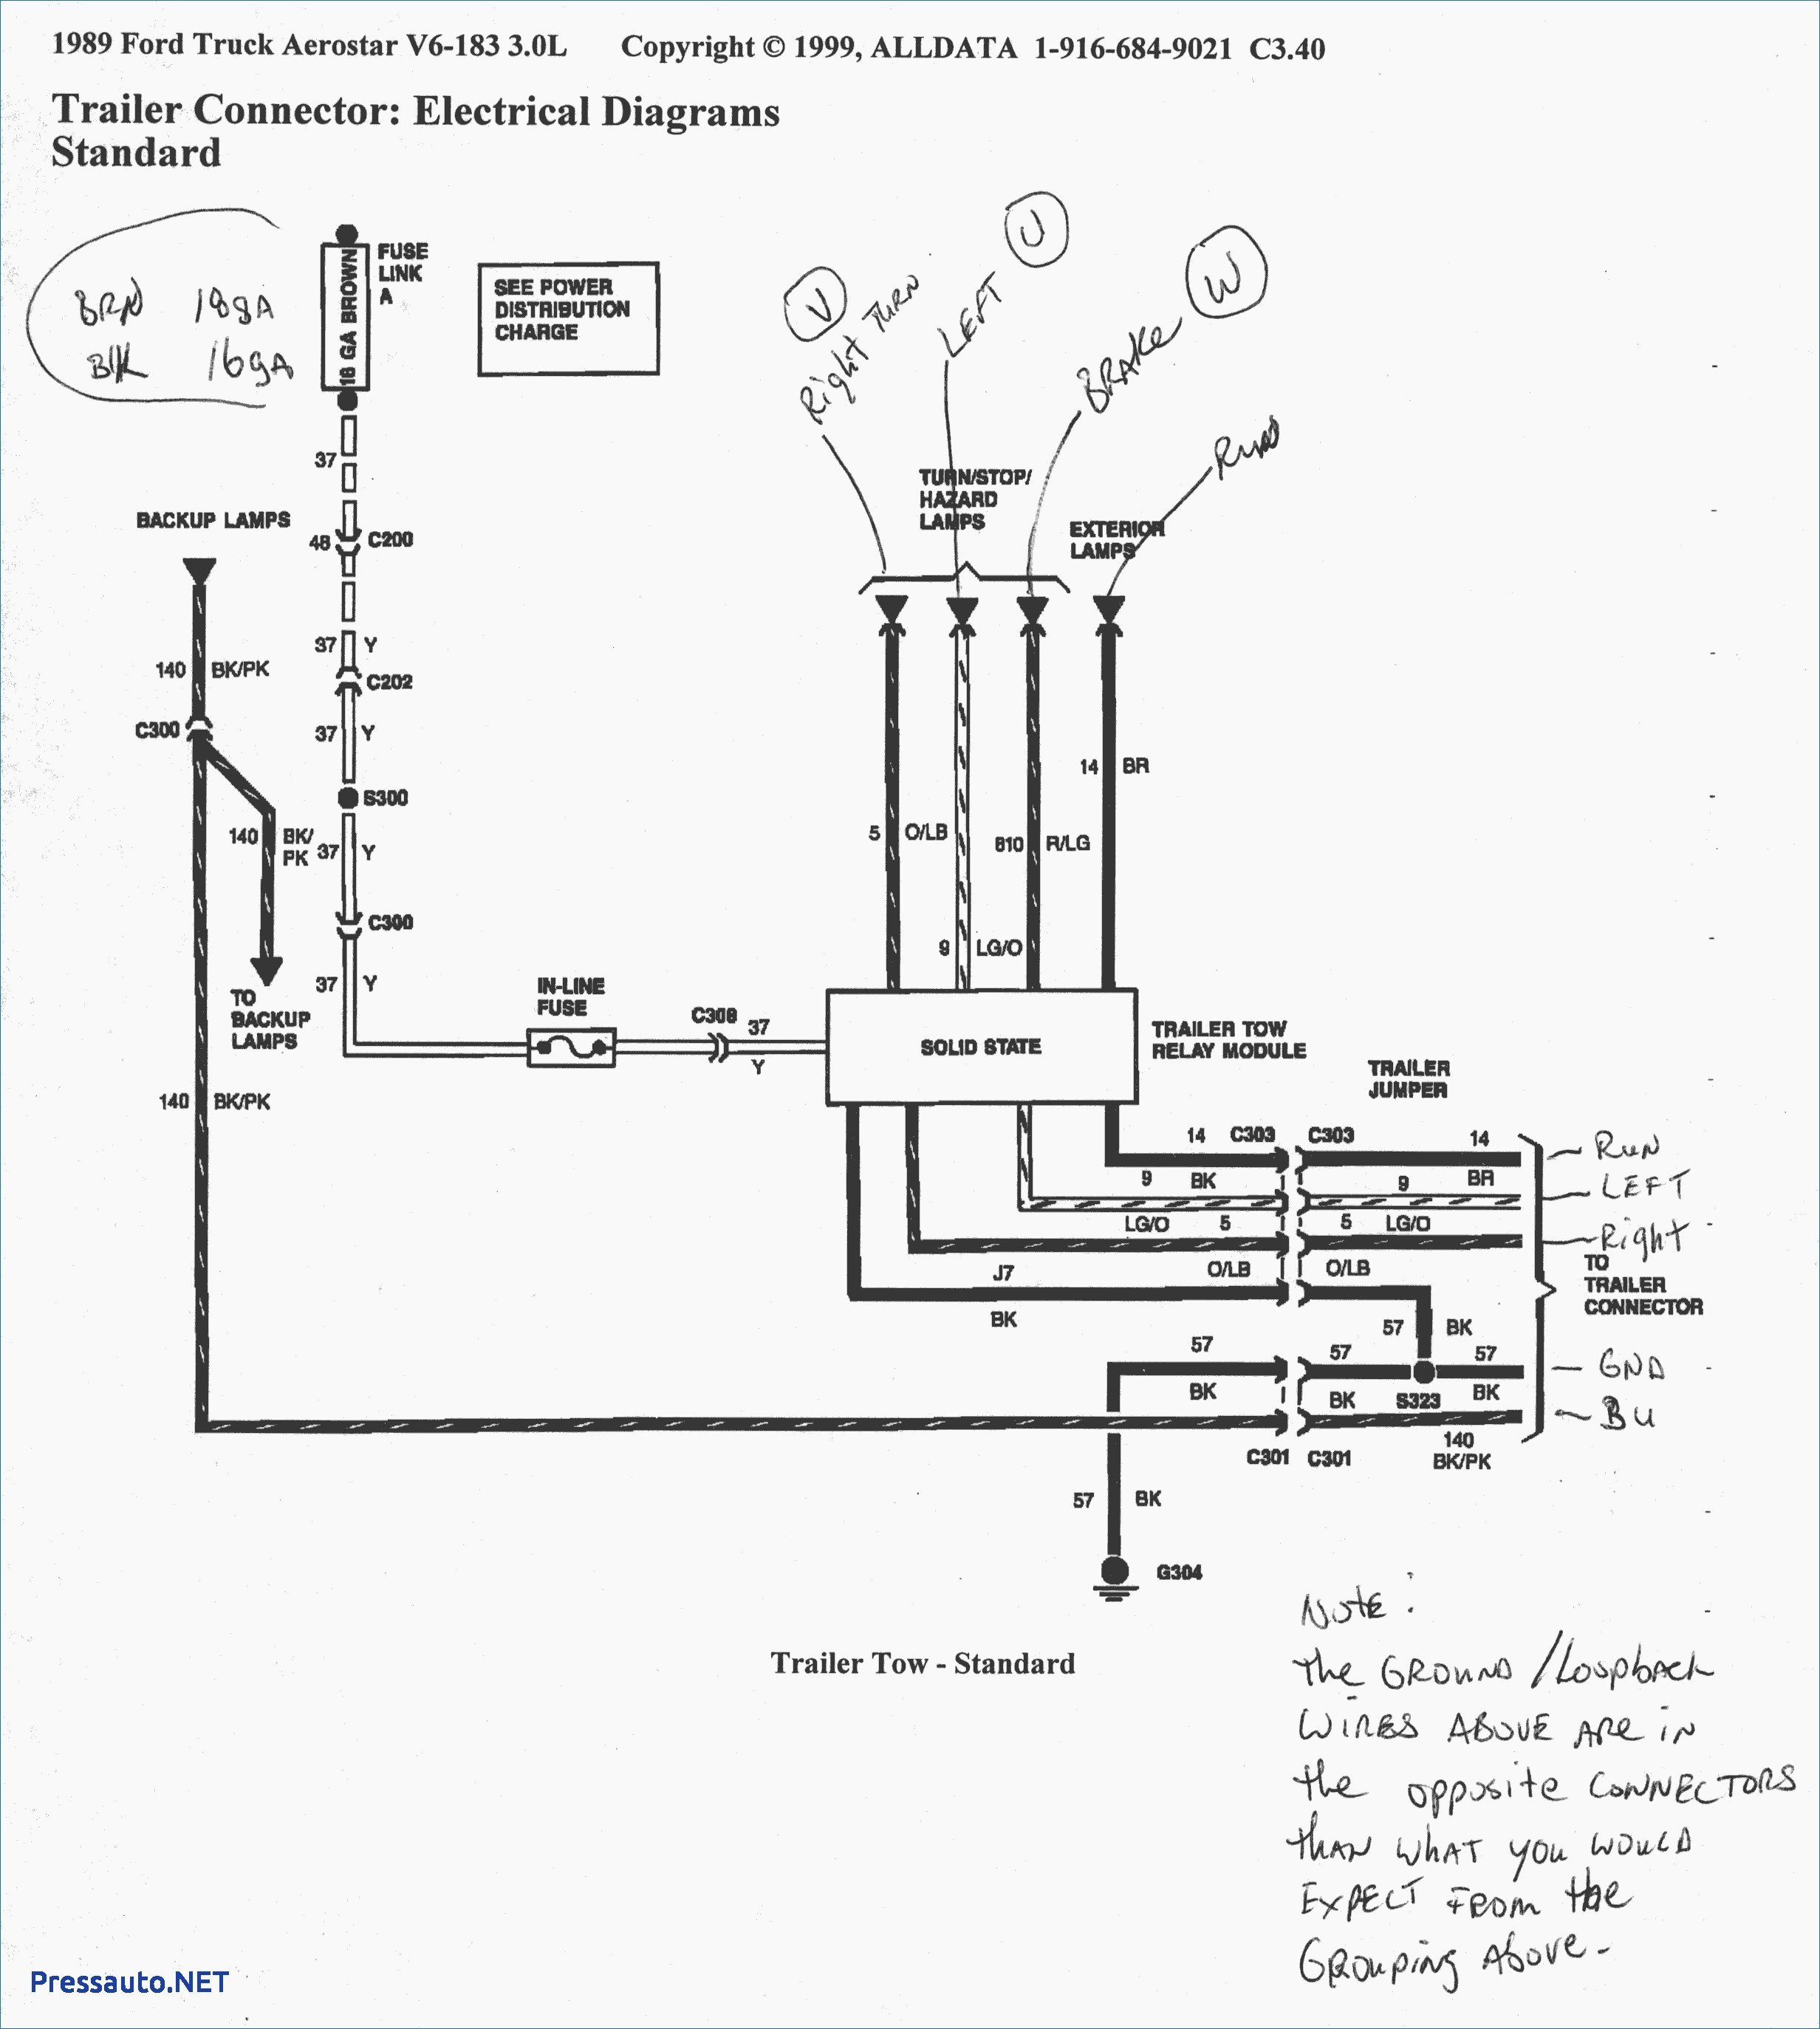 2004 ford F150 Wiring Diagram 86 ford F 150 Wiring Diagram Reveolution Wiring Diagram • Of 2004 ford F150 Wiring Diagram